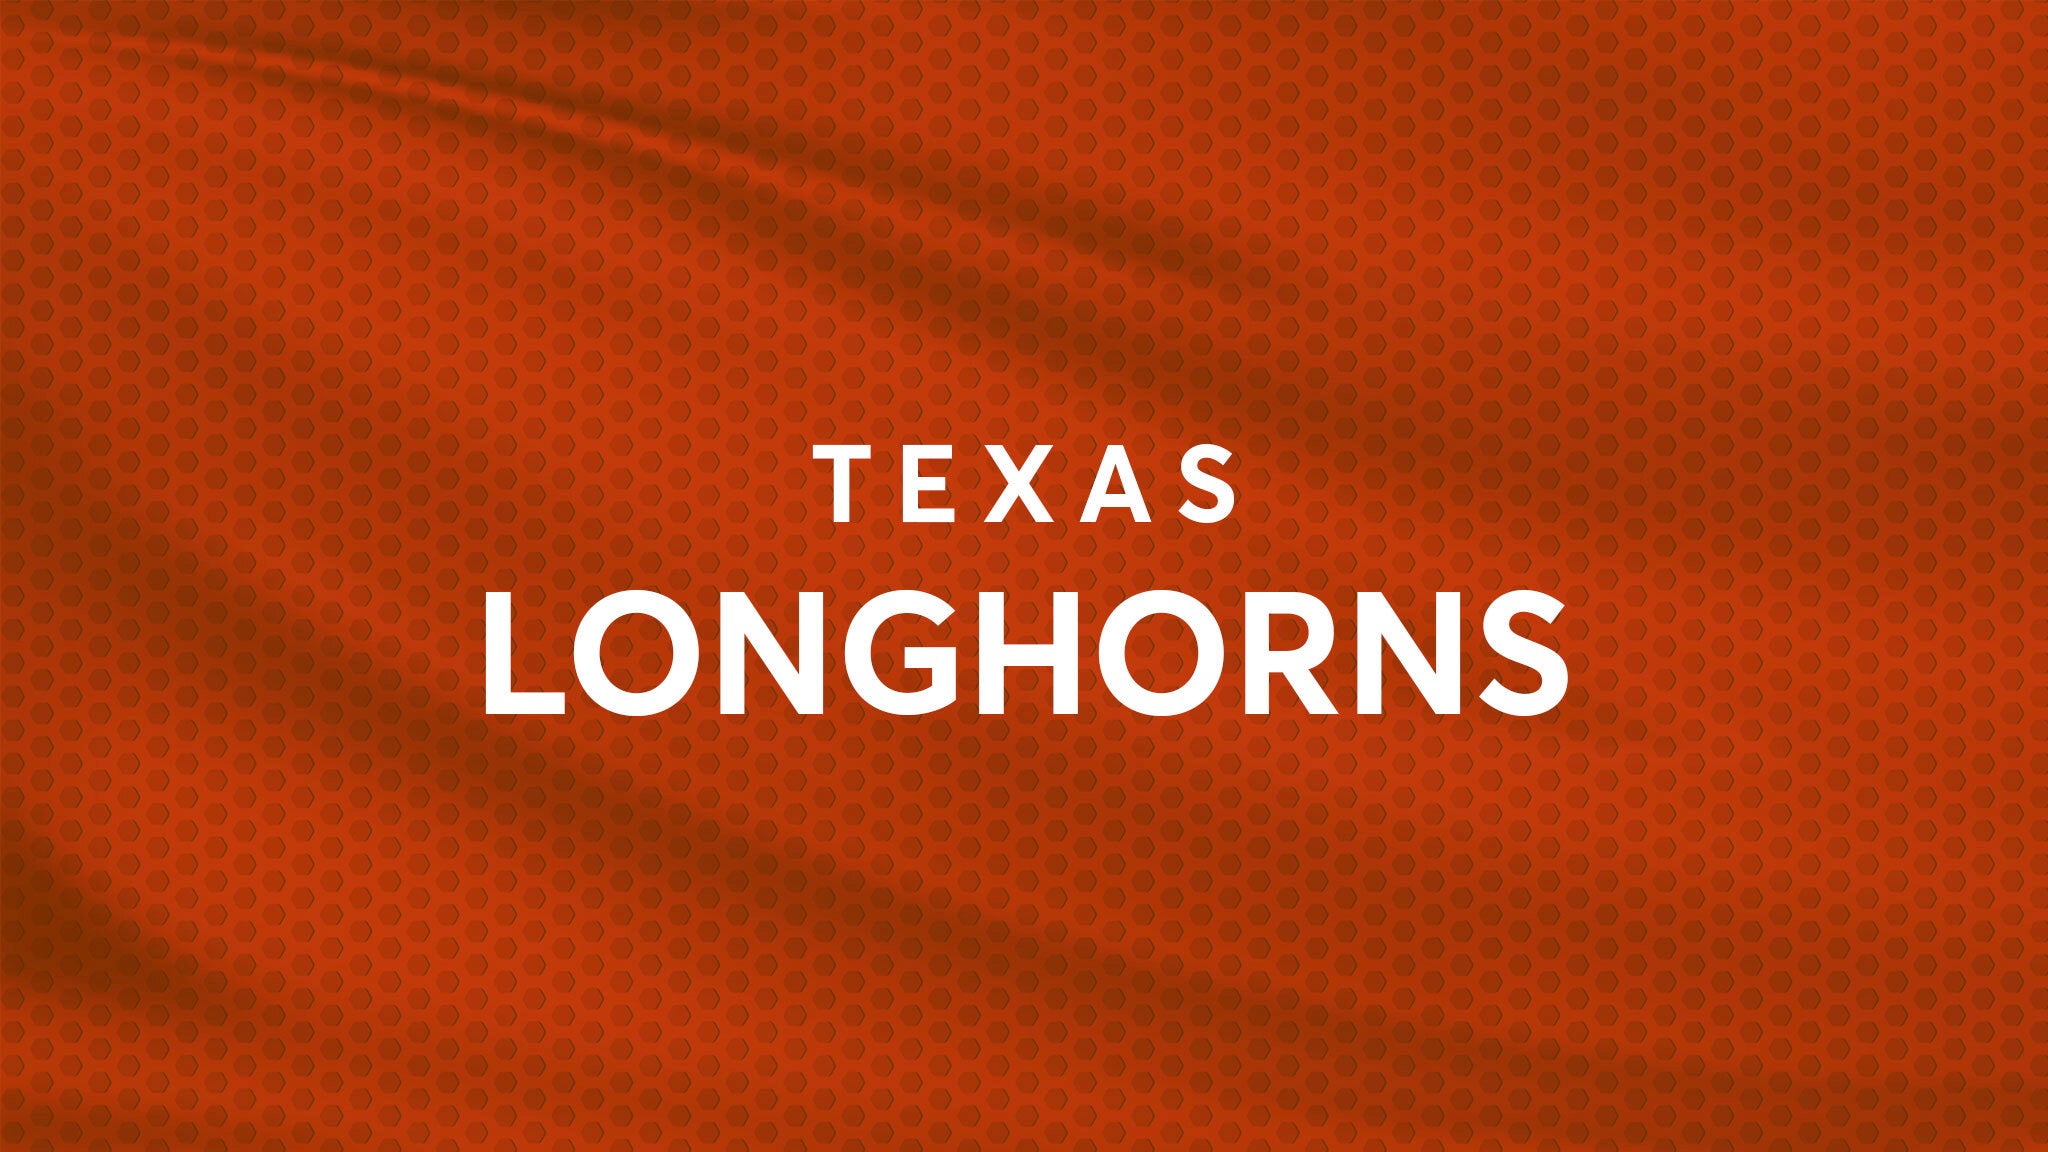 Texas Longhorns Baseball vs. UTA Mavericks Baseball